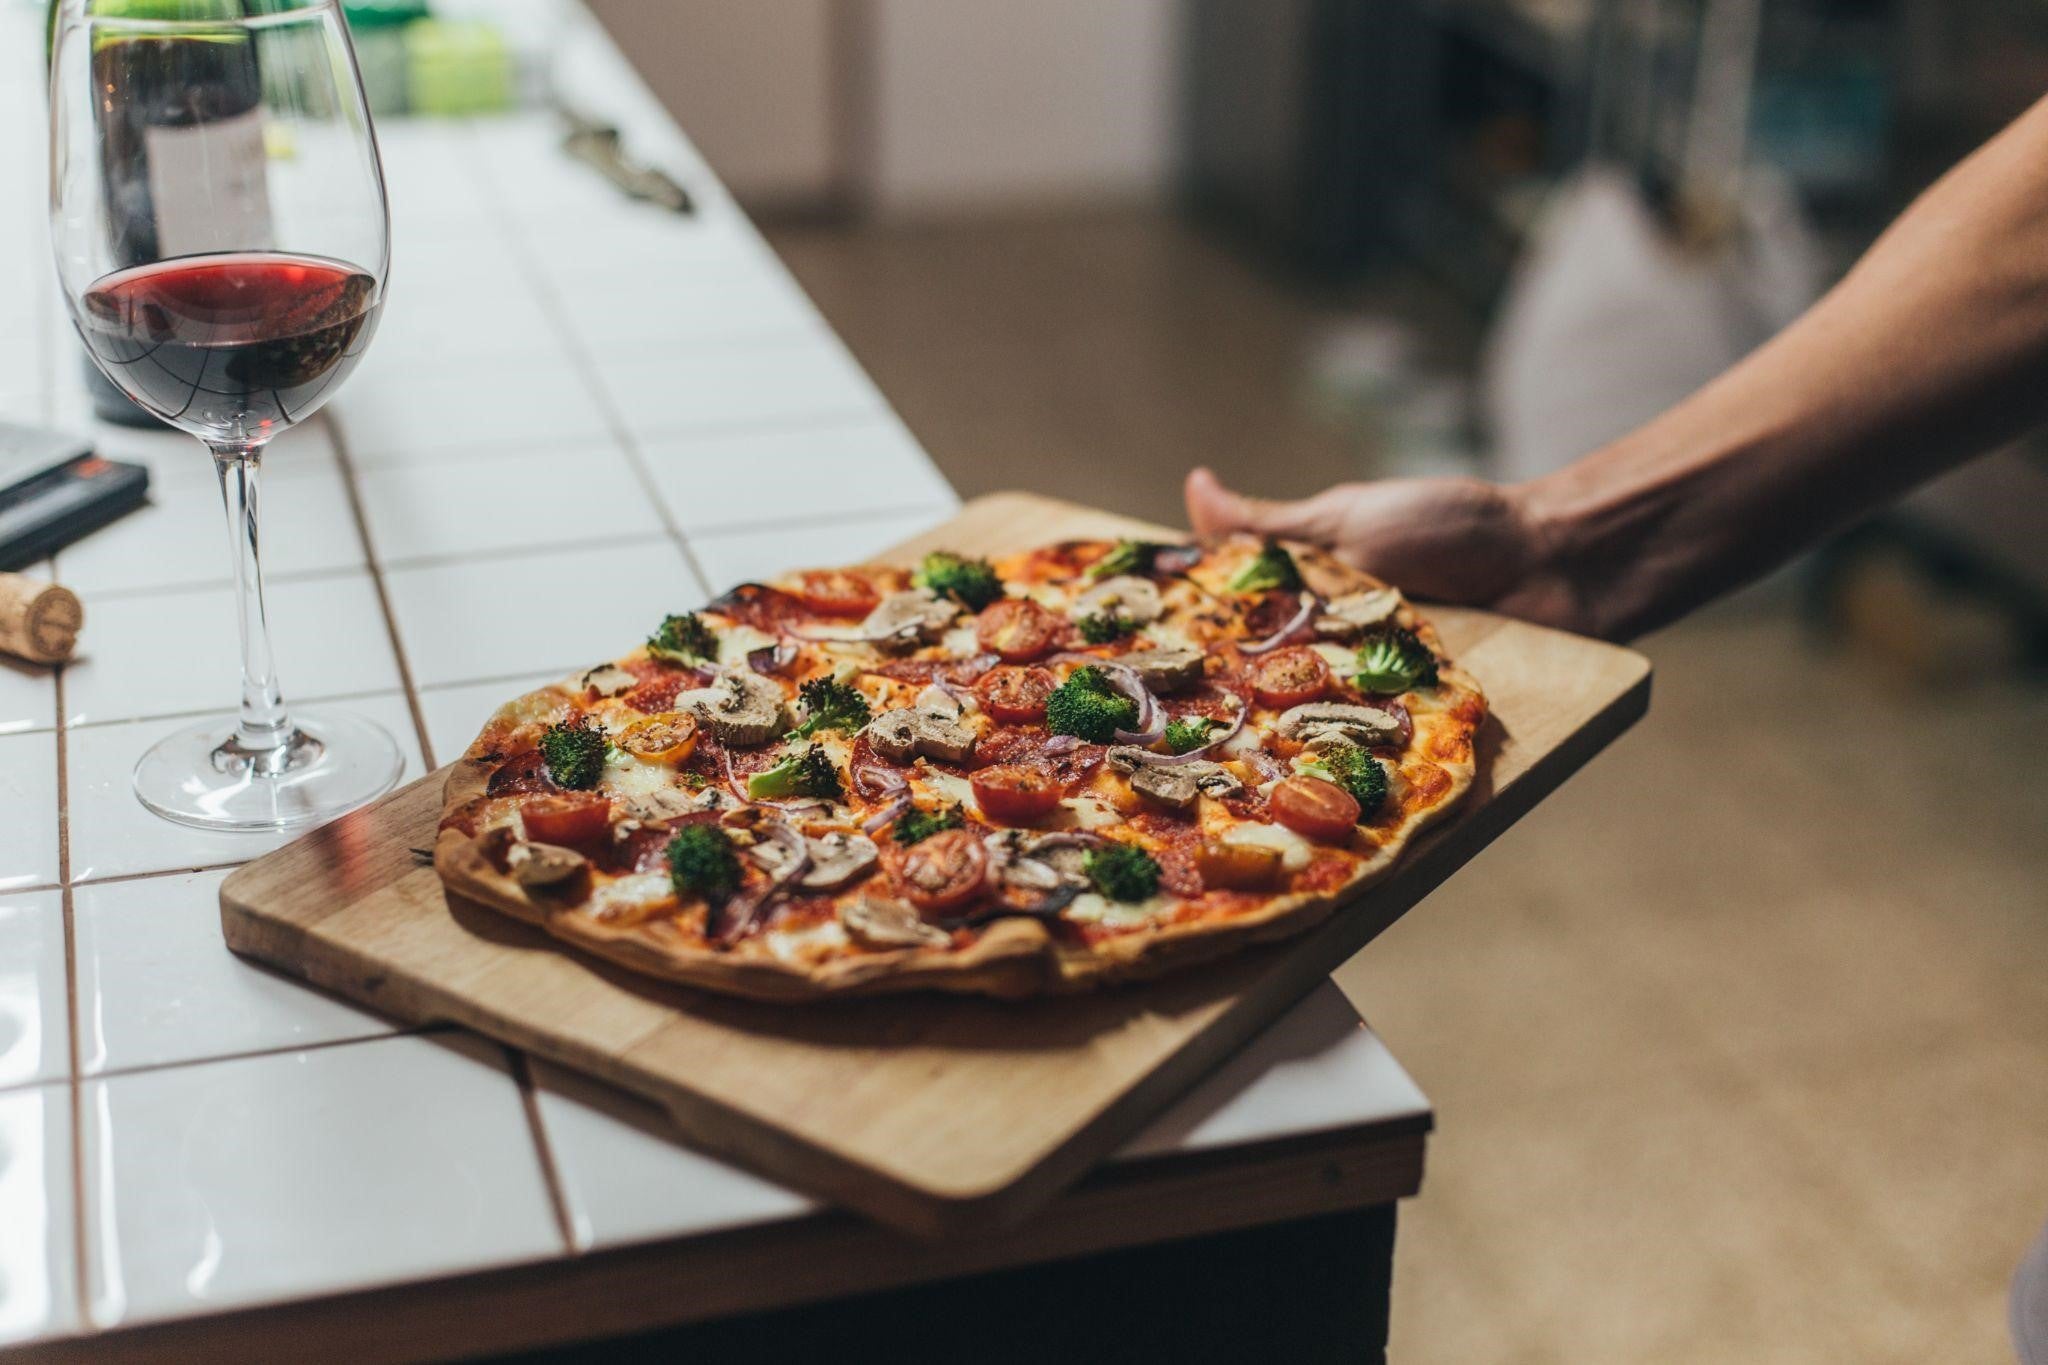 Ce vinuri poți servi în funcție de pizza?